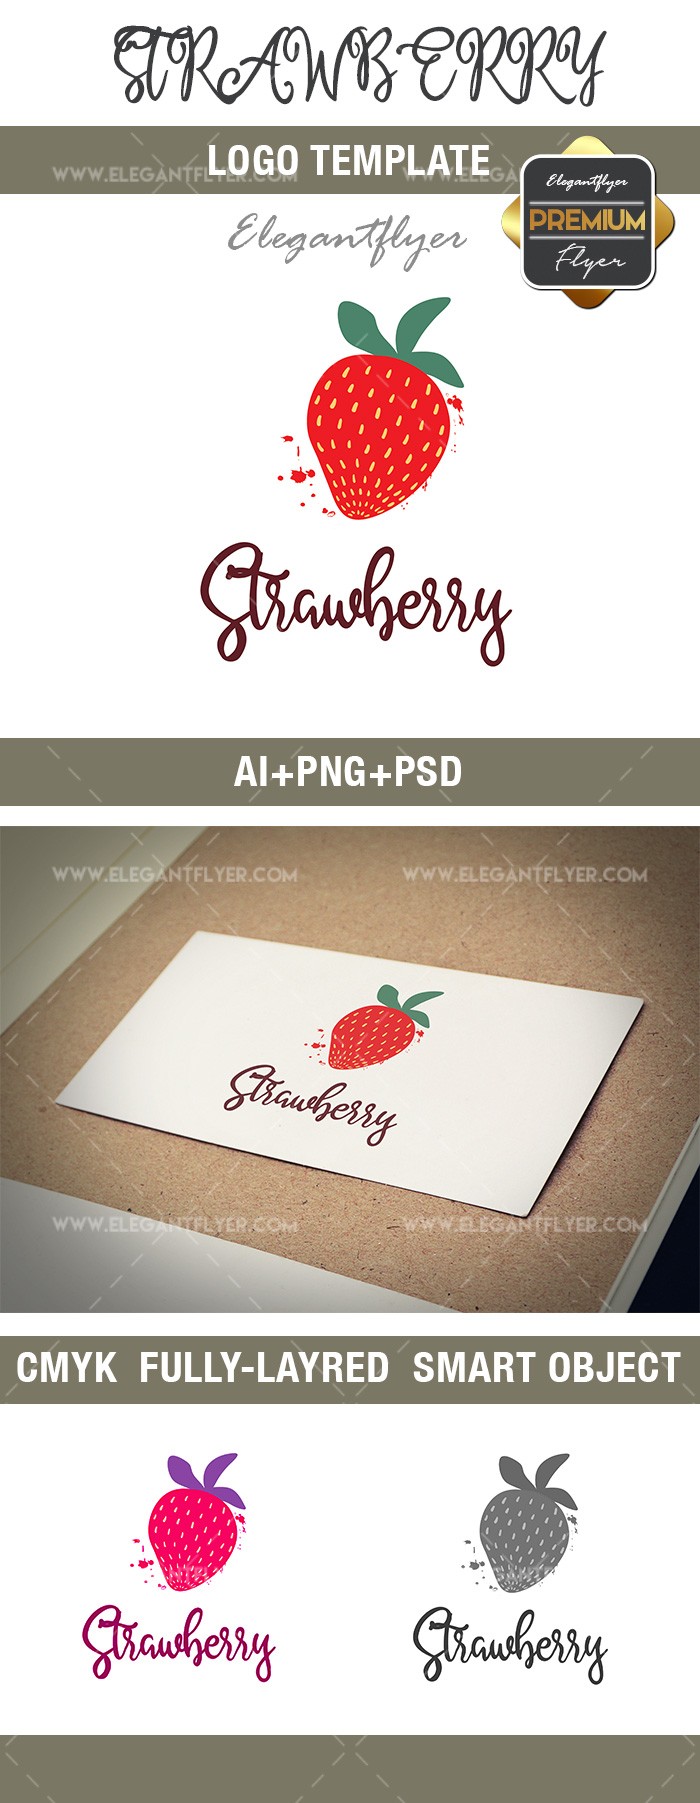 草莓 by ElegantFlyer